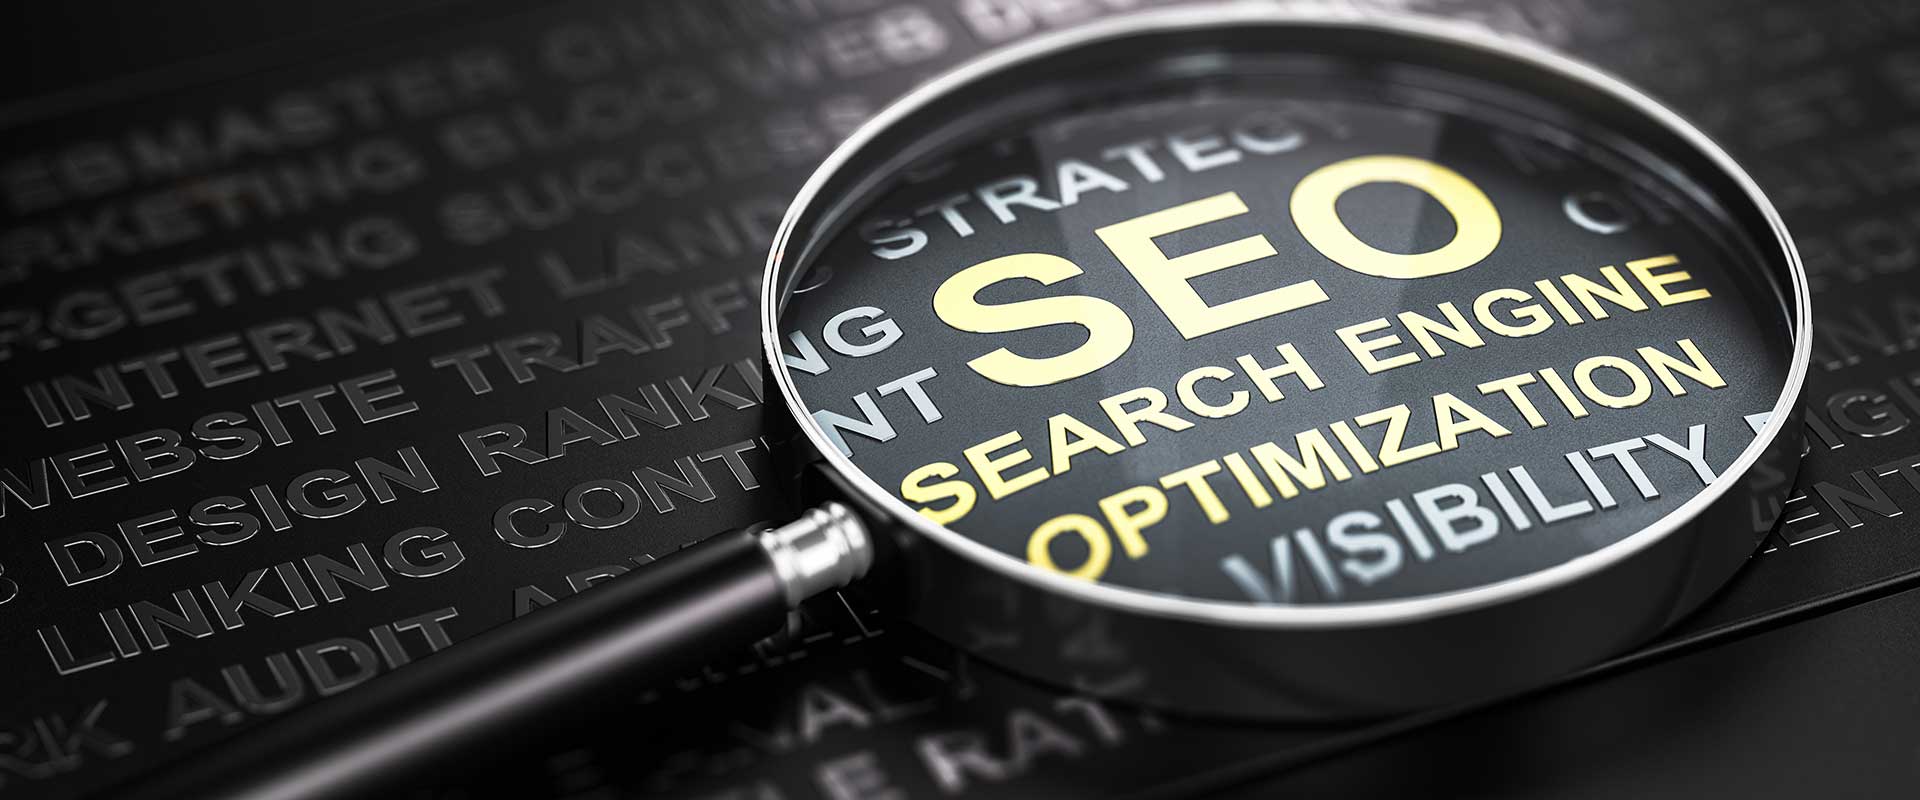 search engine optimisation basics seo